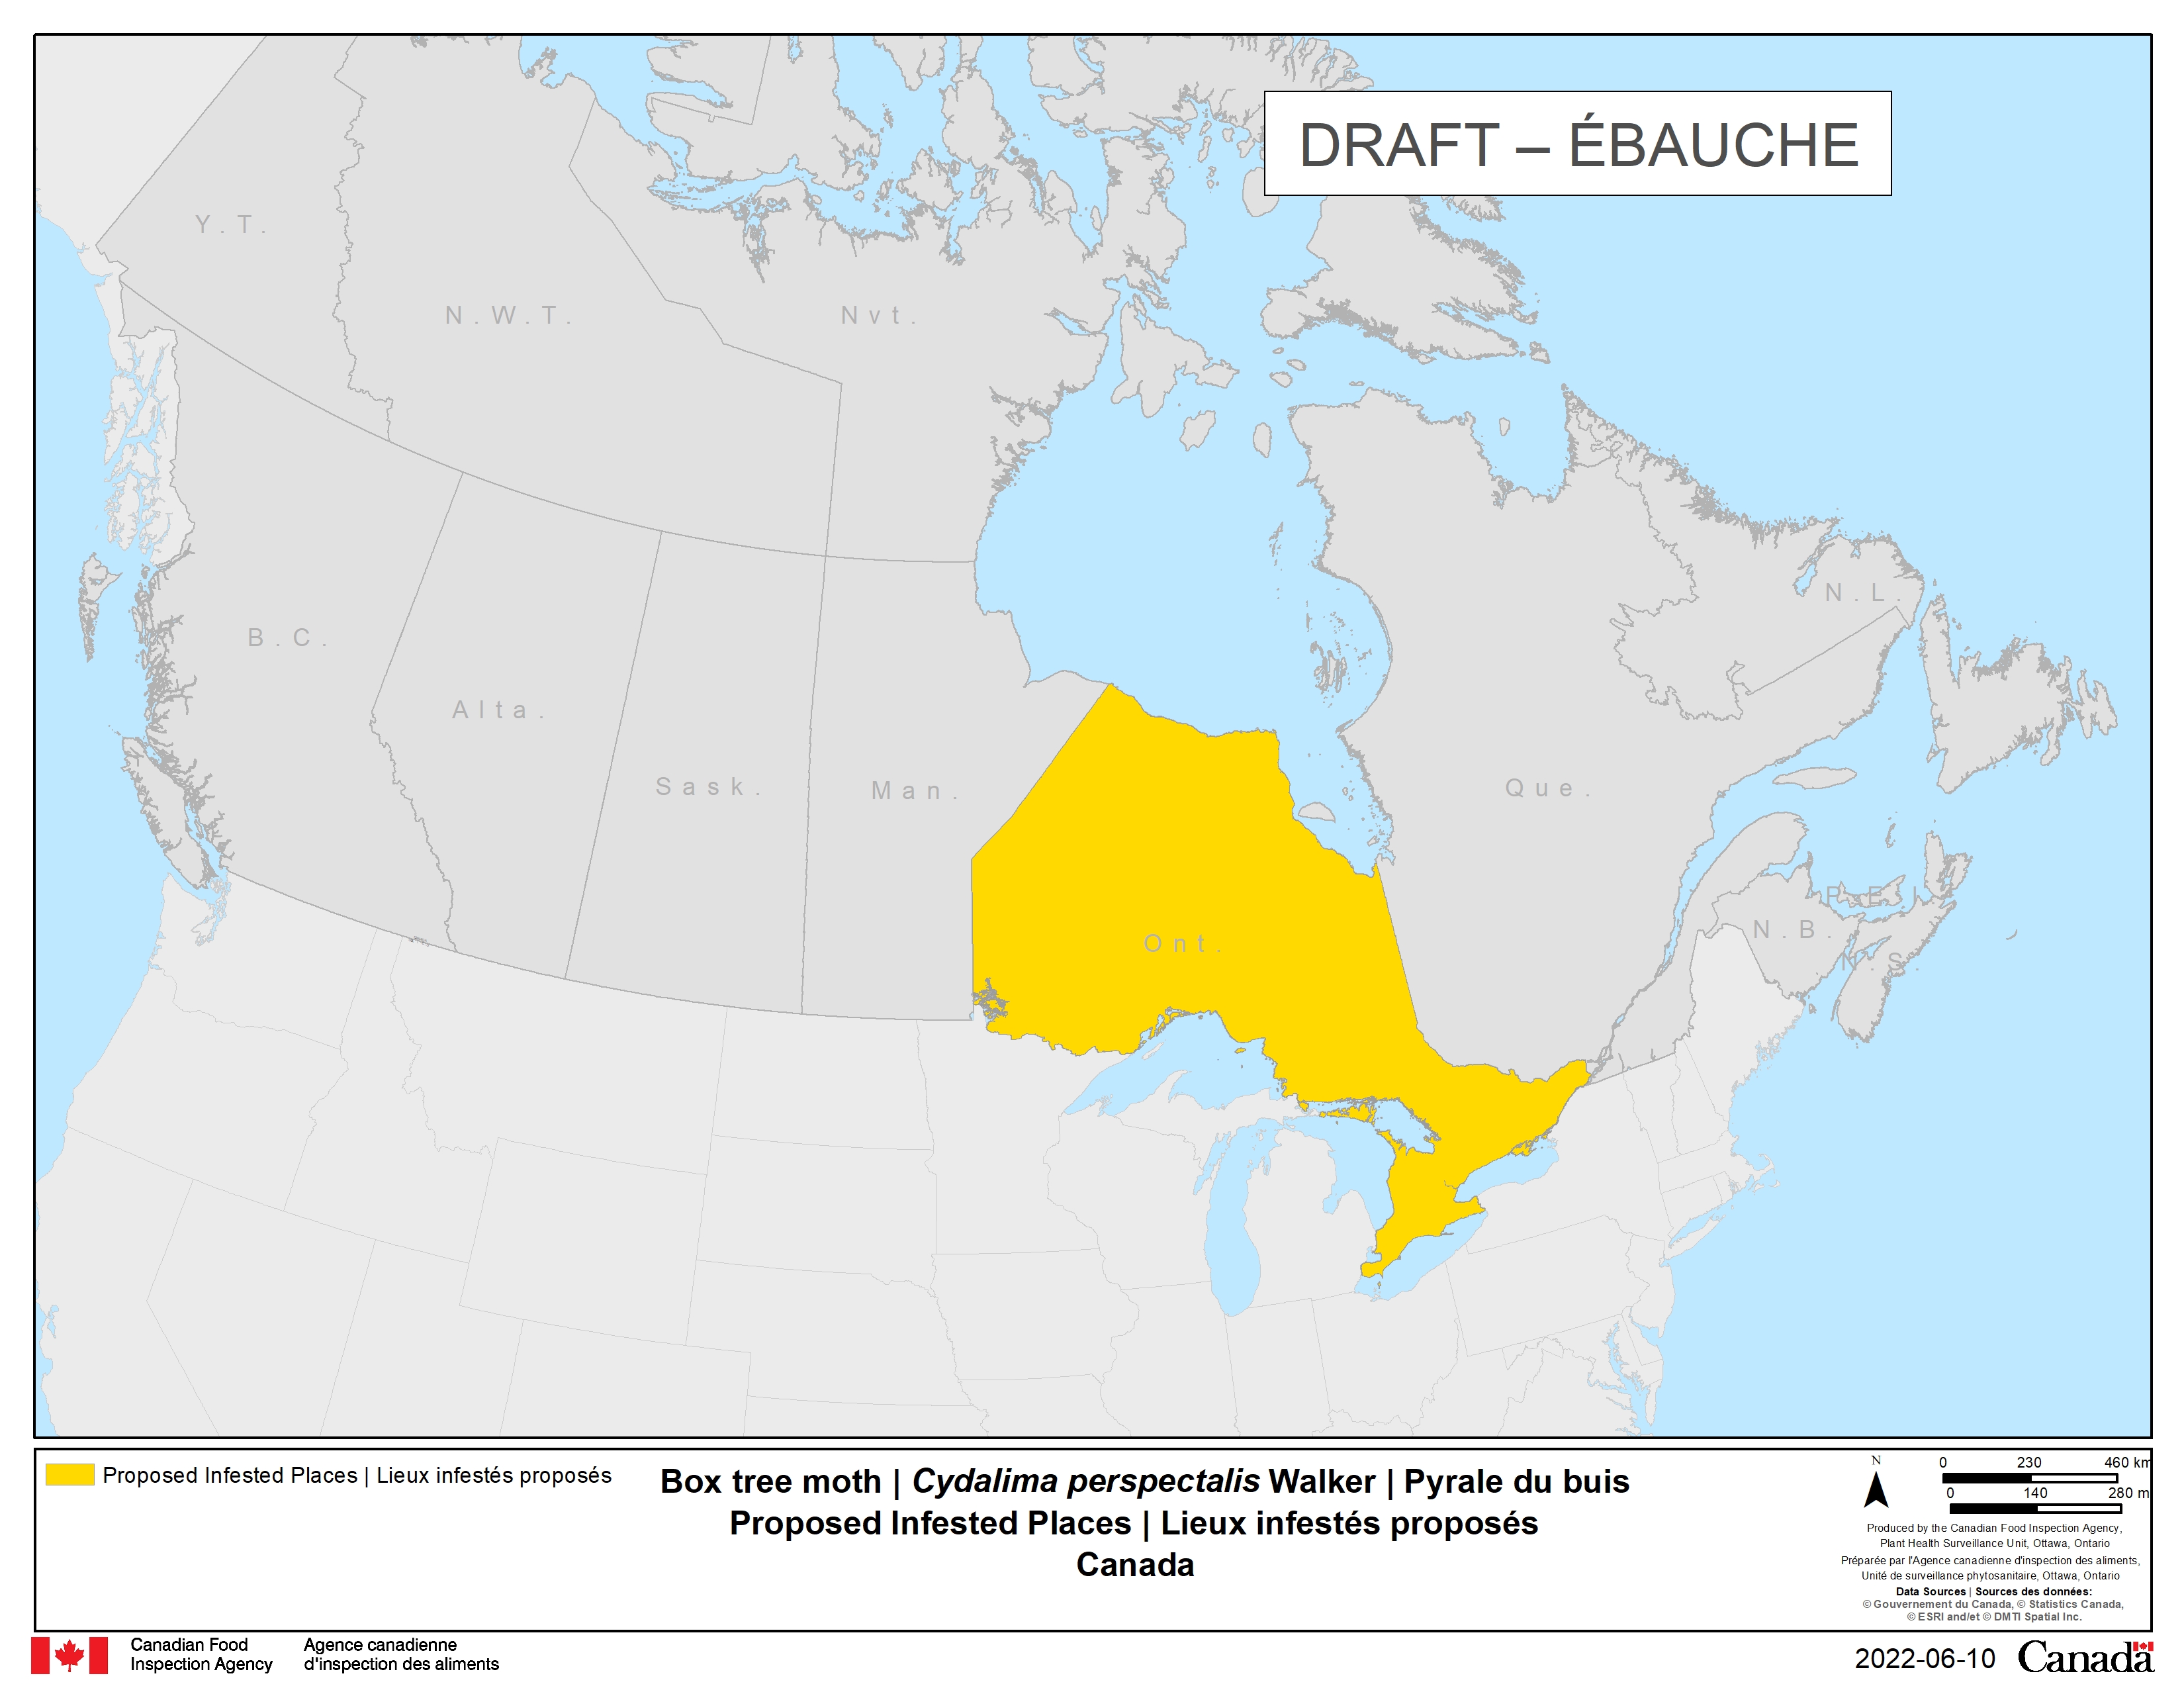 Zone réglementée proposée pour l'ensemble de l'Ontario. Description ci-dessous.